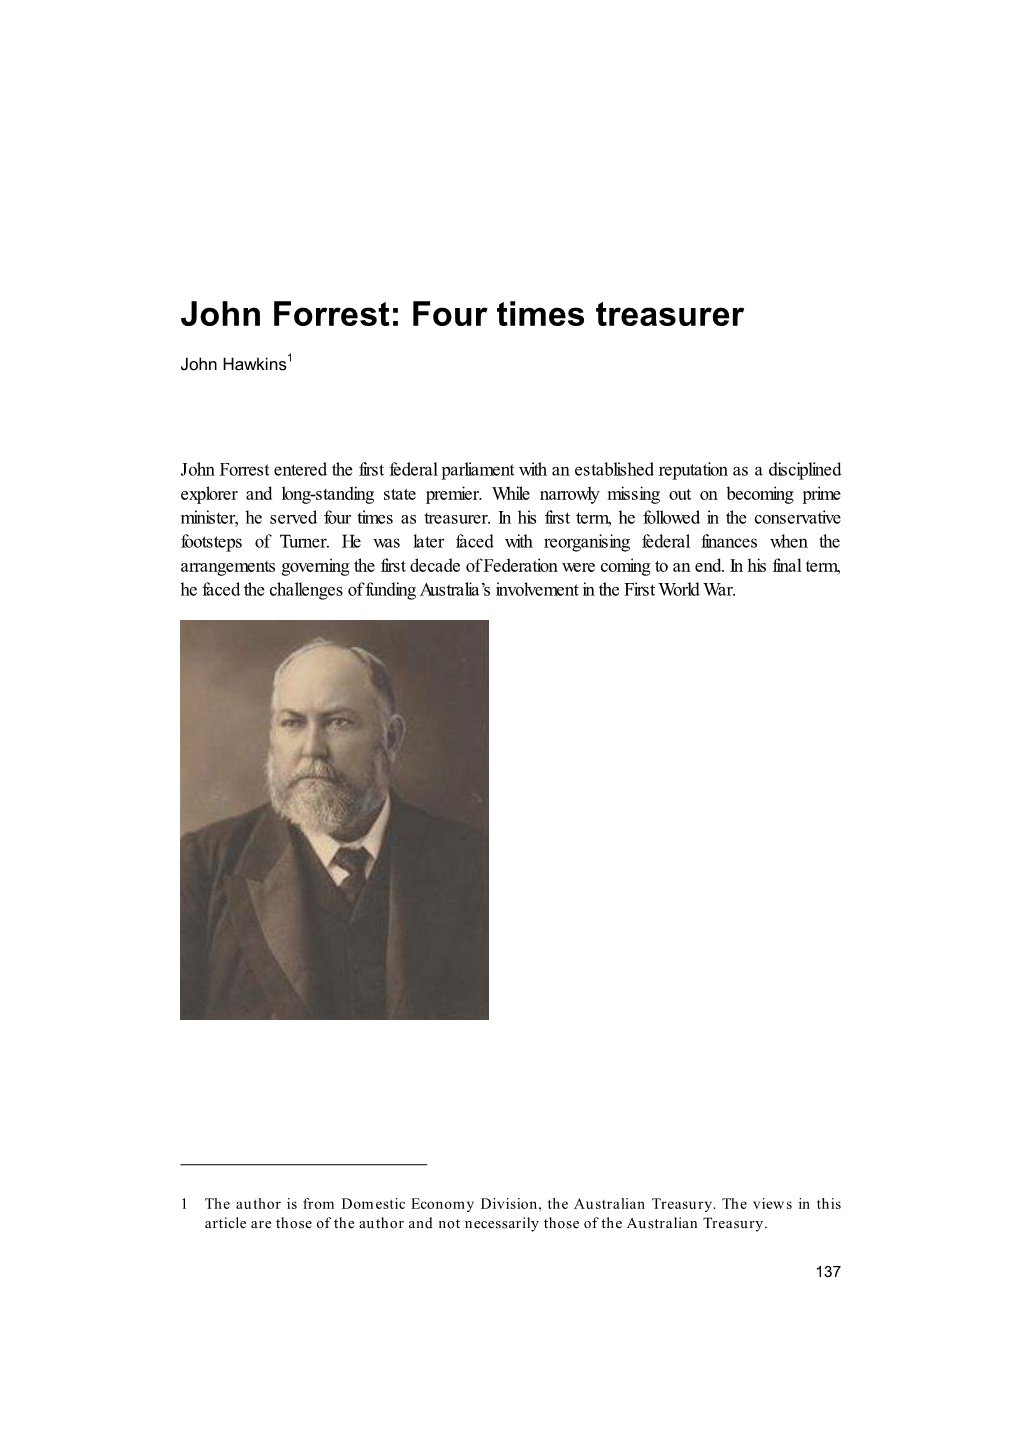 John Forrest: Four Times Treasurer